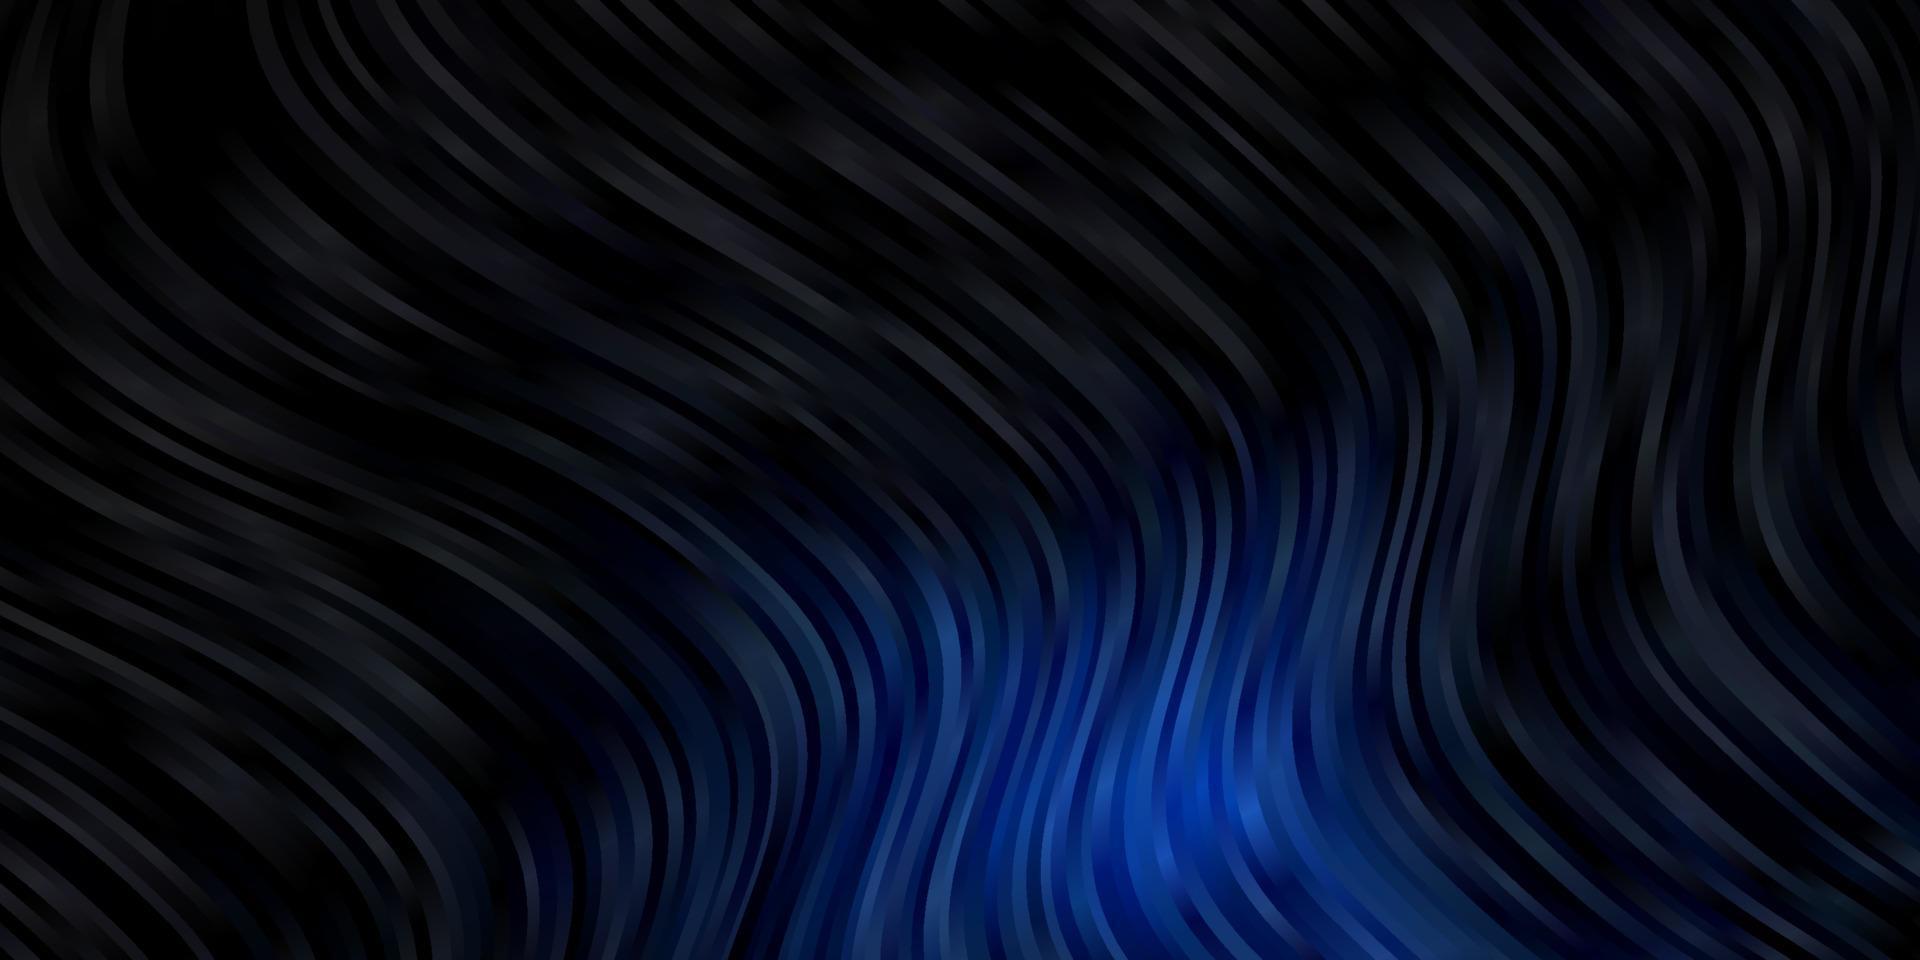 sfondo vettoriale blu scuro con curve.